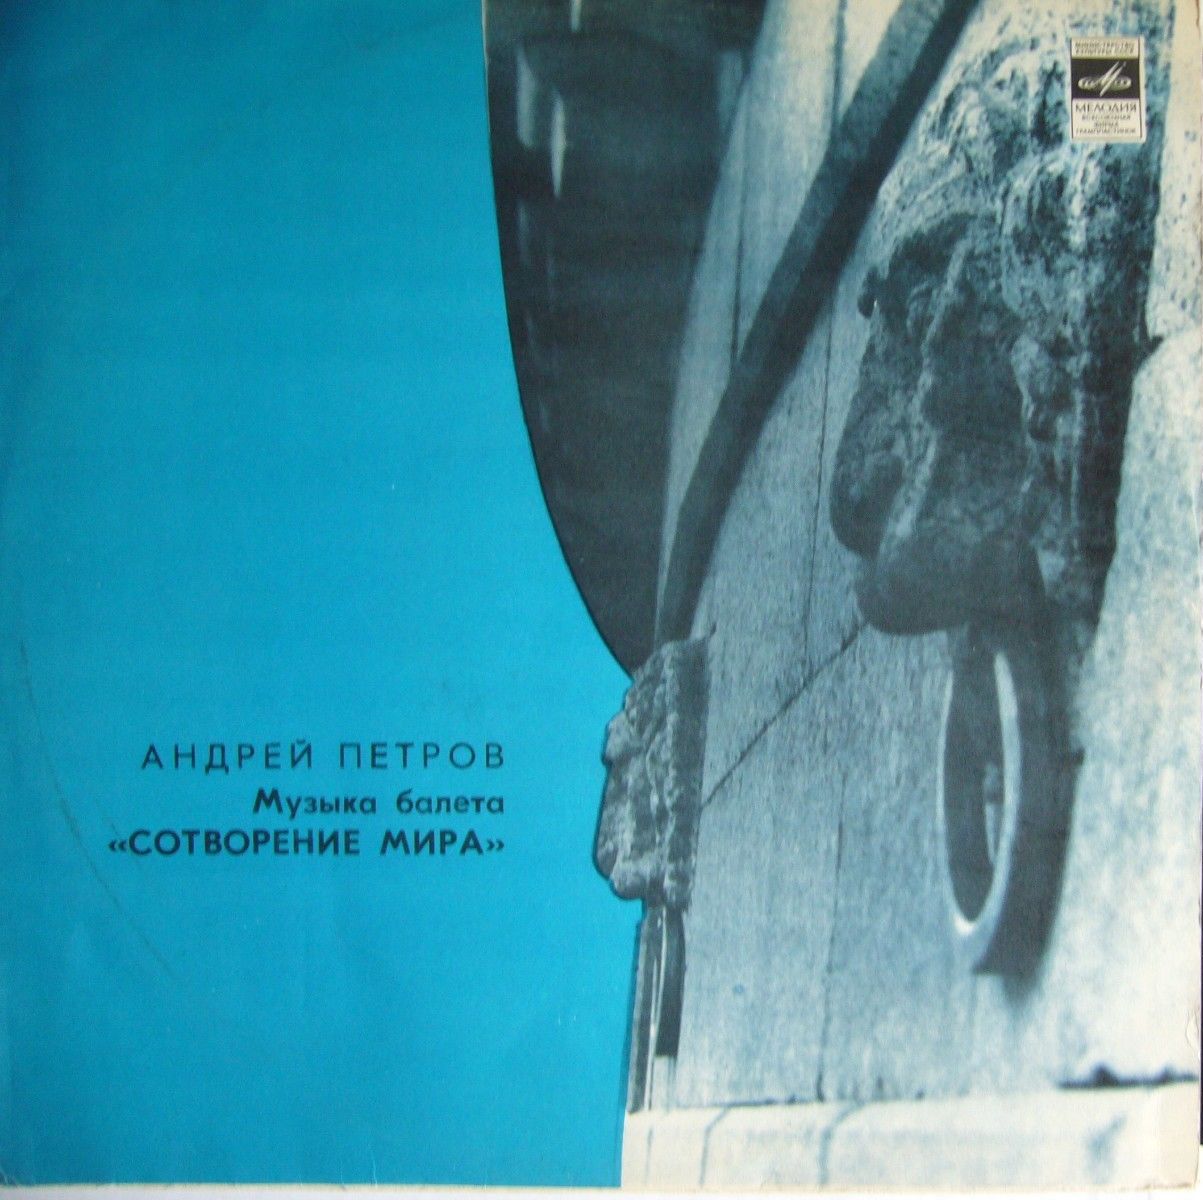 А. ПЕТРОВ (1930): «Сотворение мира», музыка балета (по мотивам рисунков Ж. Эффеля)